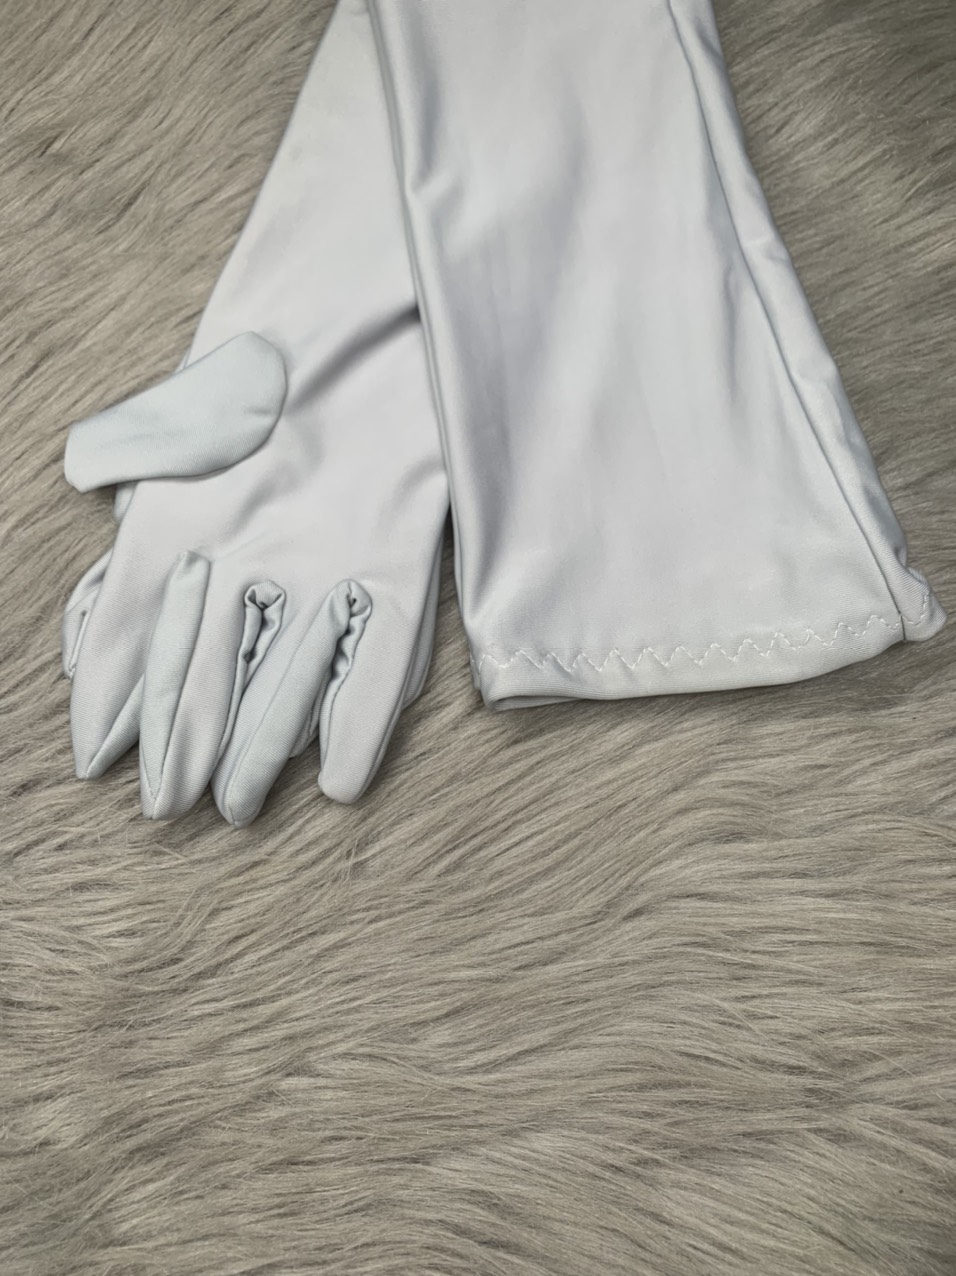 [HCM]Combo 5 đôi găng tay , dài 65cm , thun lạnh 4 chiều ' chống nắng , cao cấp ,...